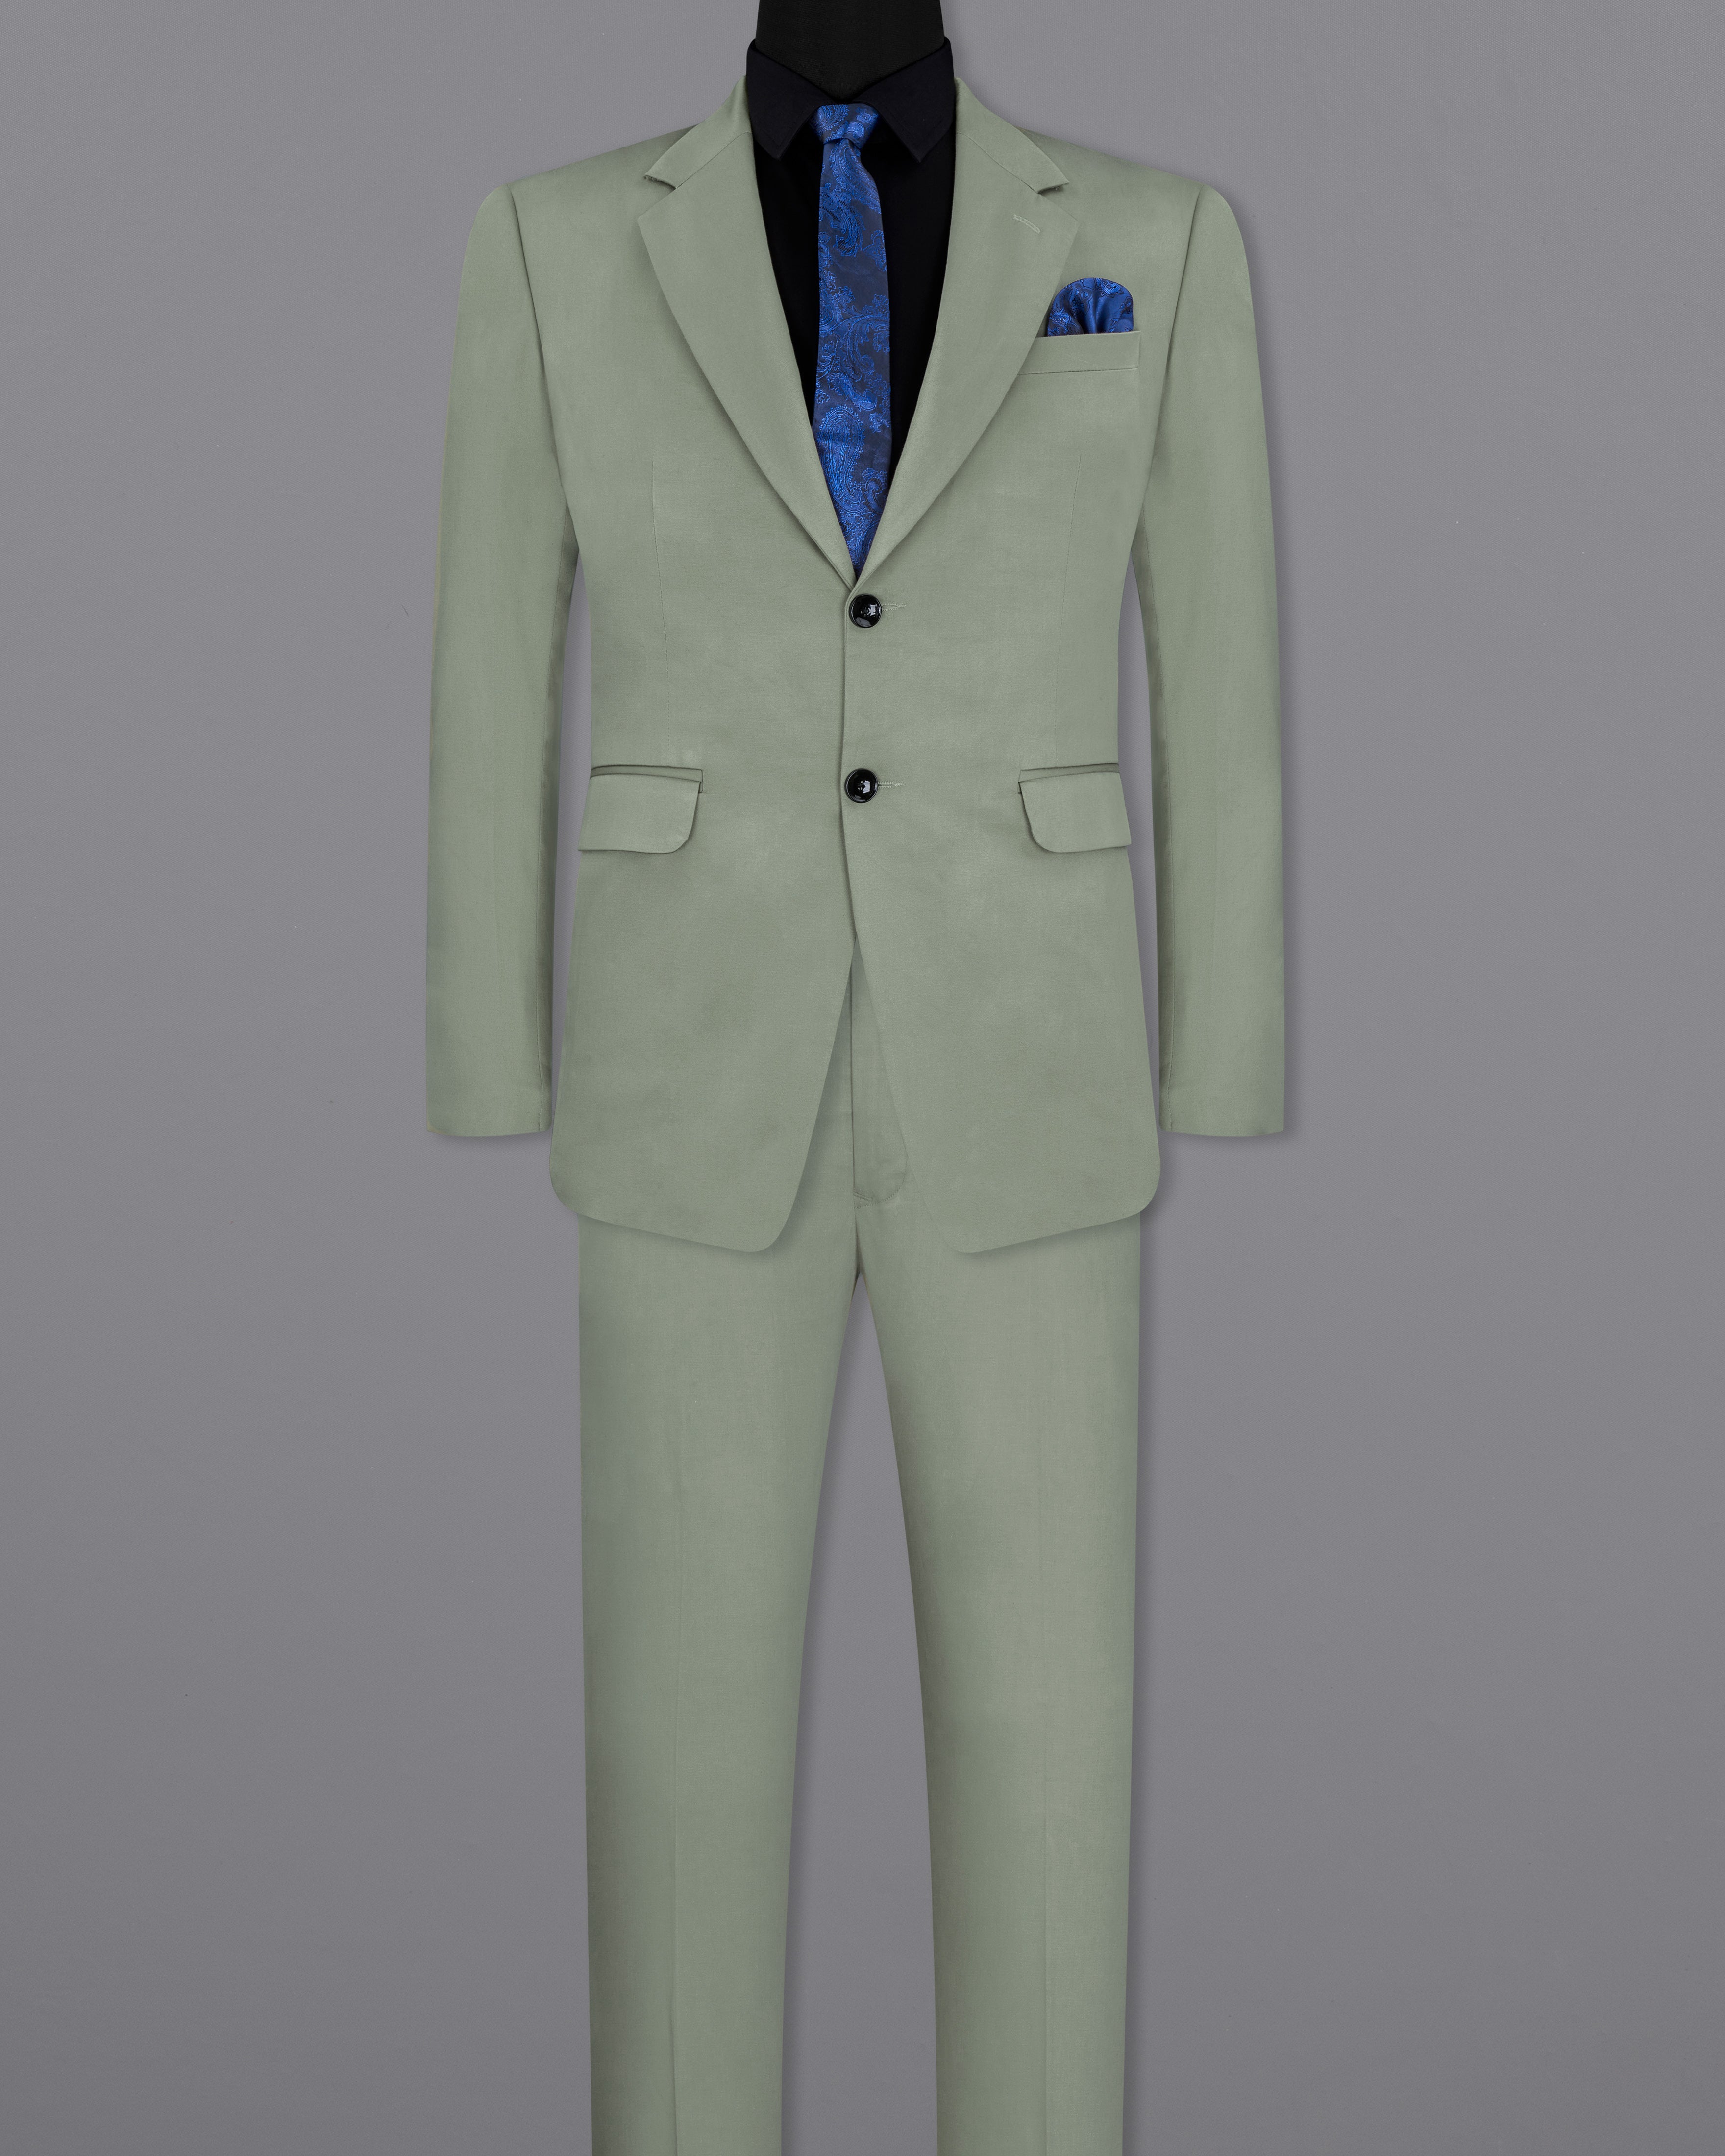 Granite Green Stretchable Premium Cotton traveler Suit